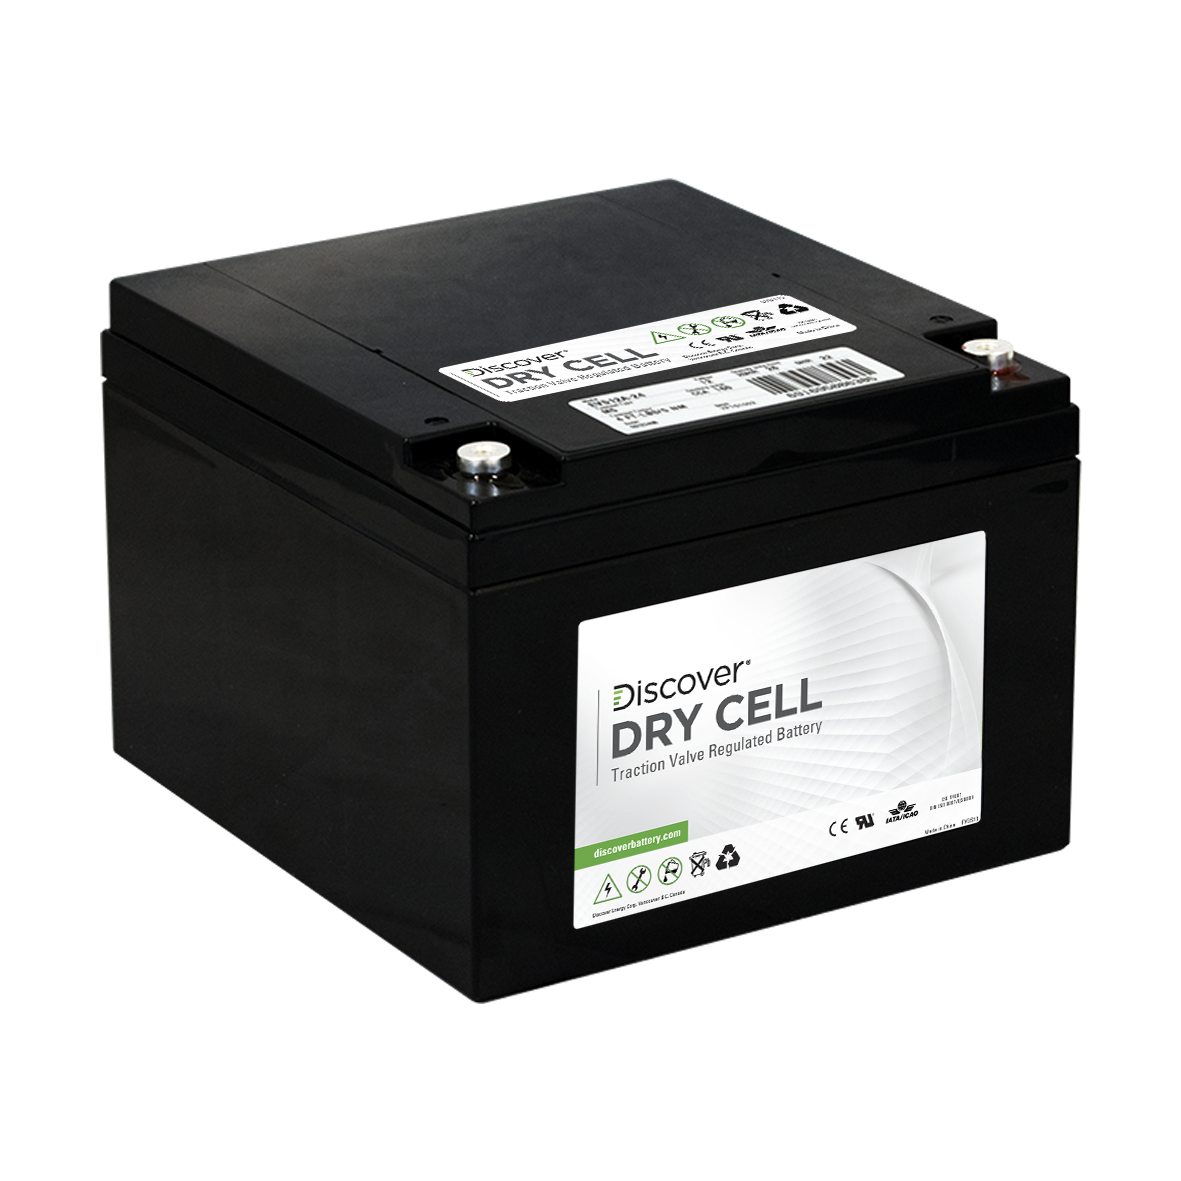 Аккумуляторы Dry Cell. Тяговые аккумуляторы для электромобилей. Discover аккумулятор. Электрическая батарейка автомобильная. Electrical battery